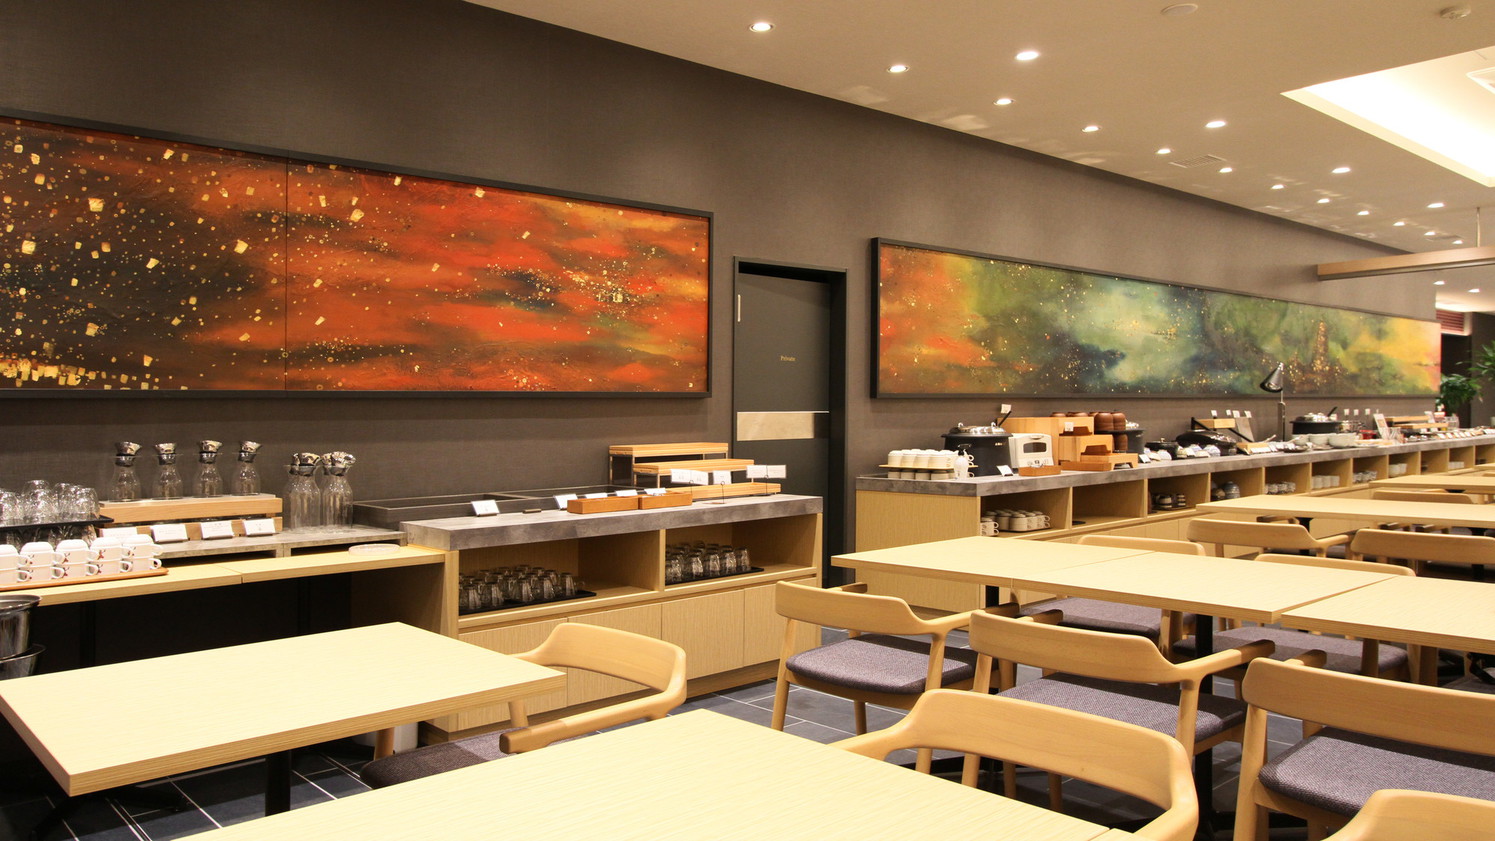 レストラン吉田エリさん、有作さん親子による、博多の四季を描いた作品「博多の光」を展示